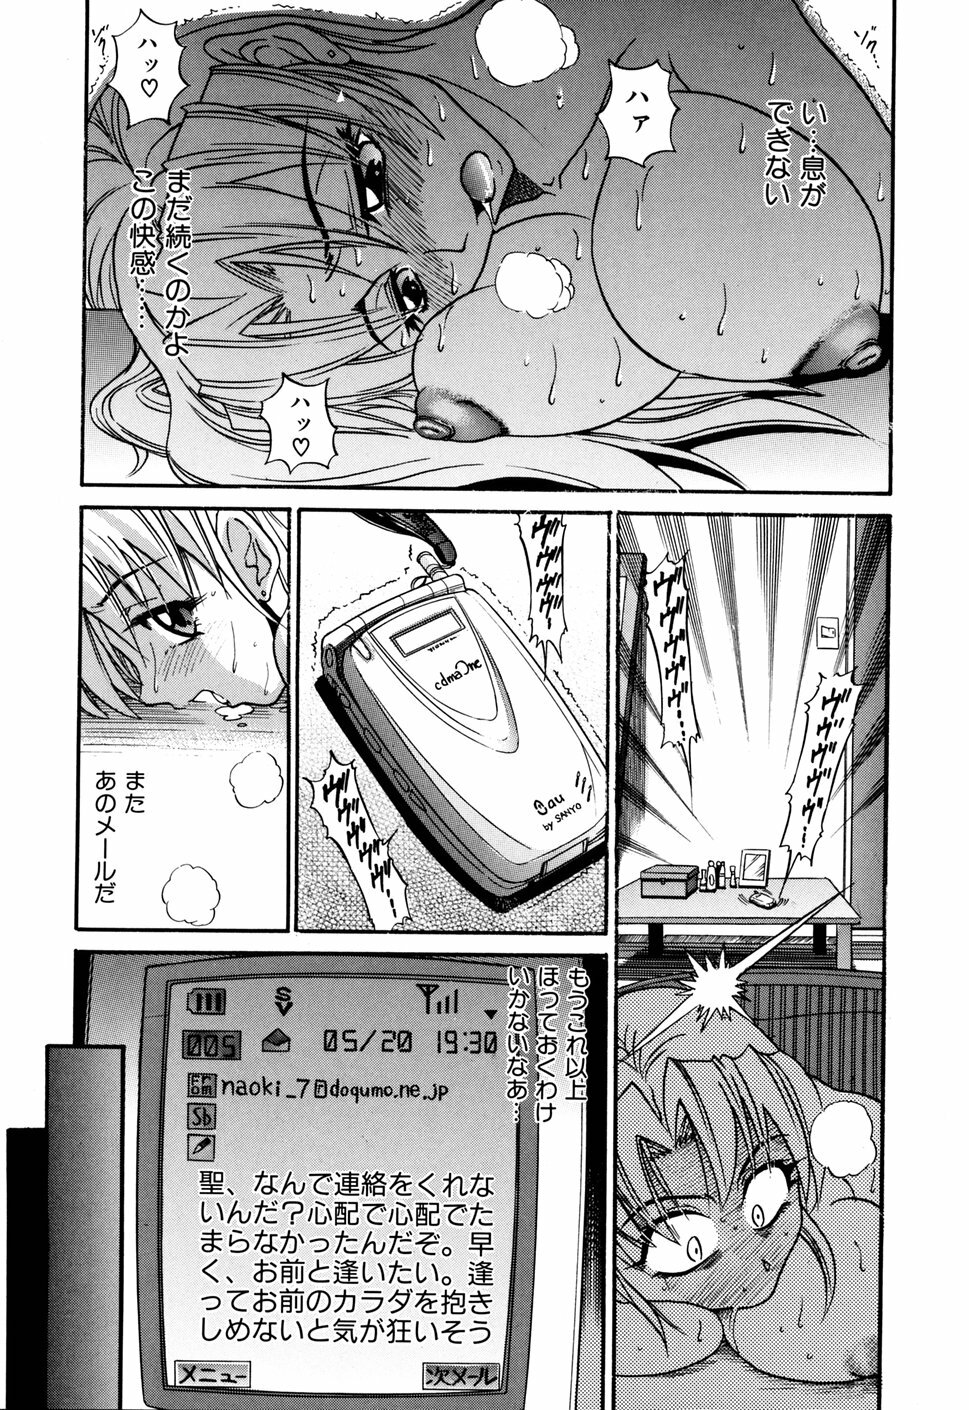 [DISTANCE] Ochiru Tenshi Vol. 1 page 37 full